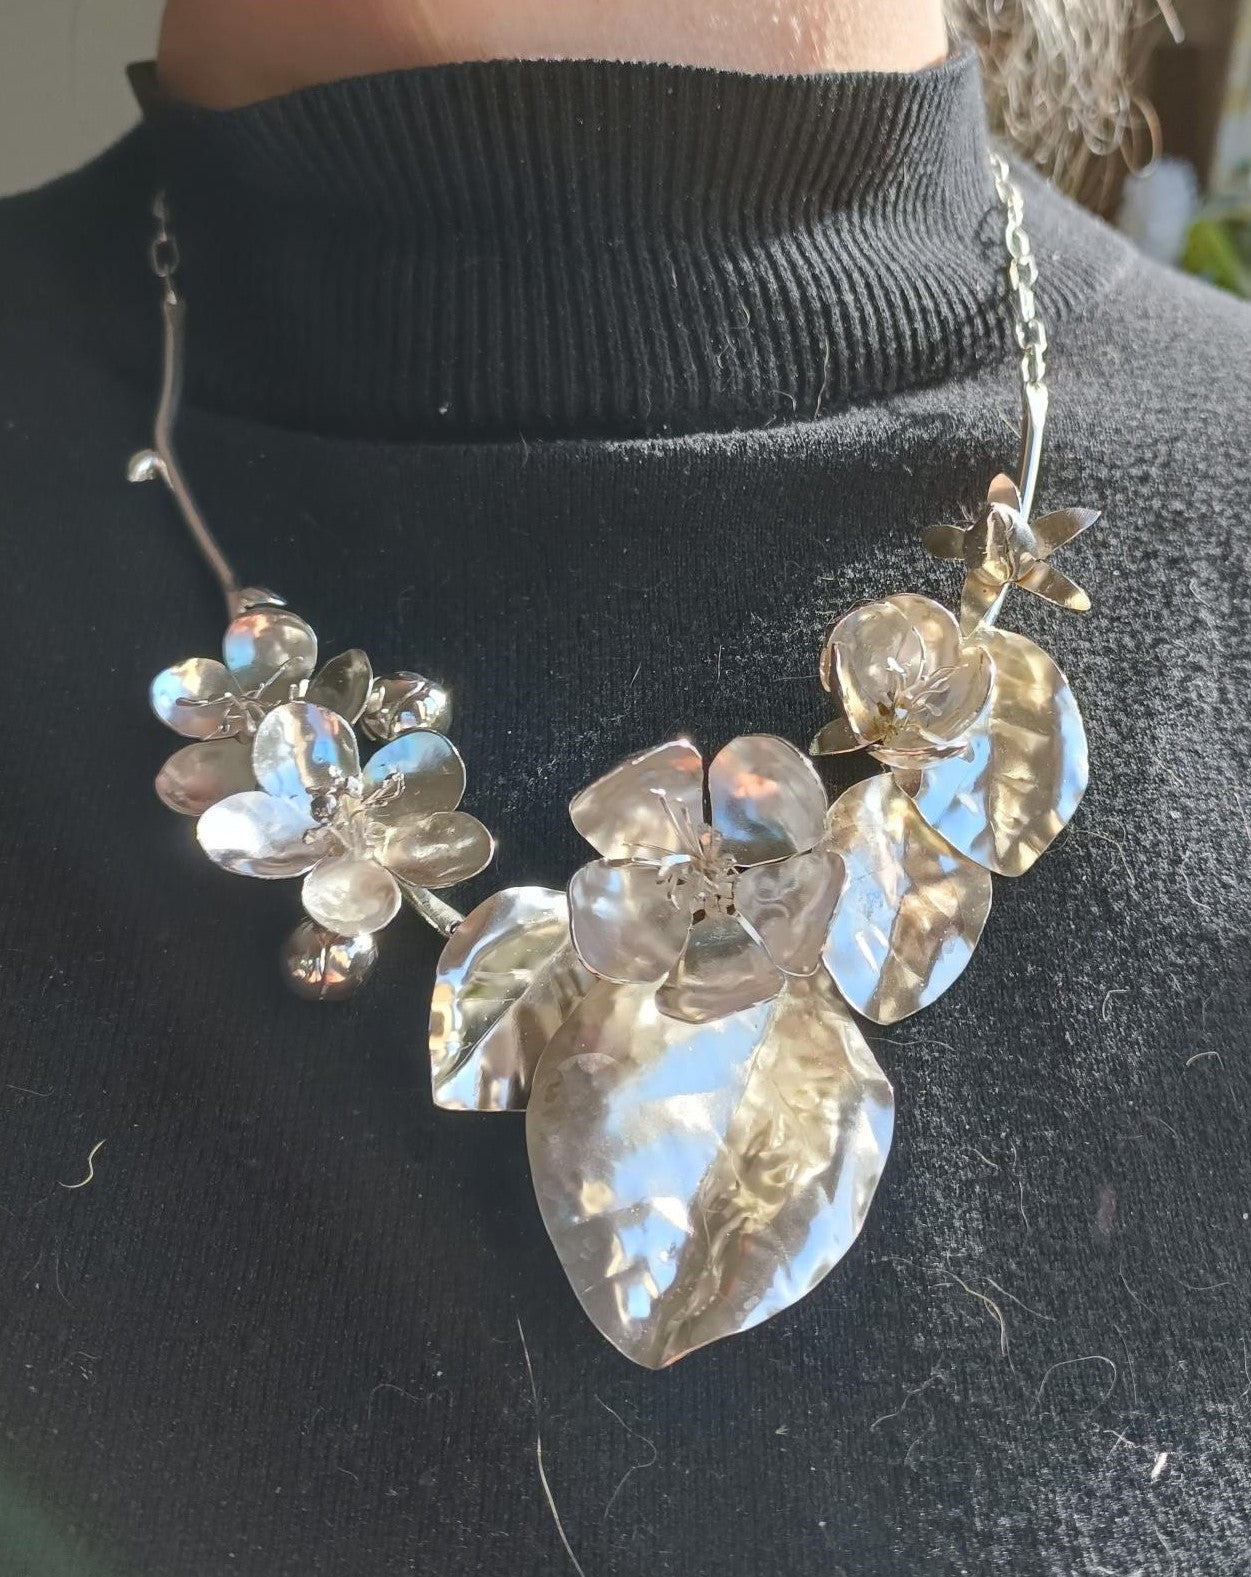 silver botanical floral necklace on black jumper